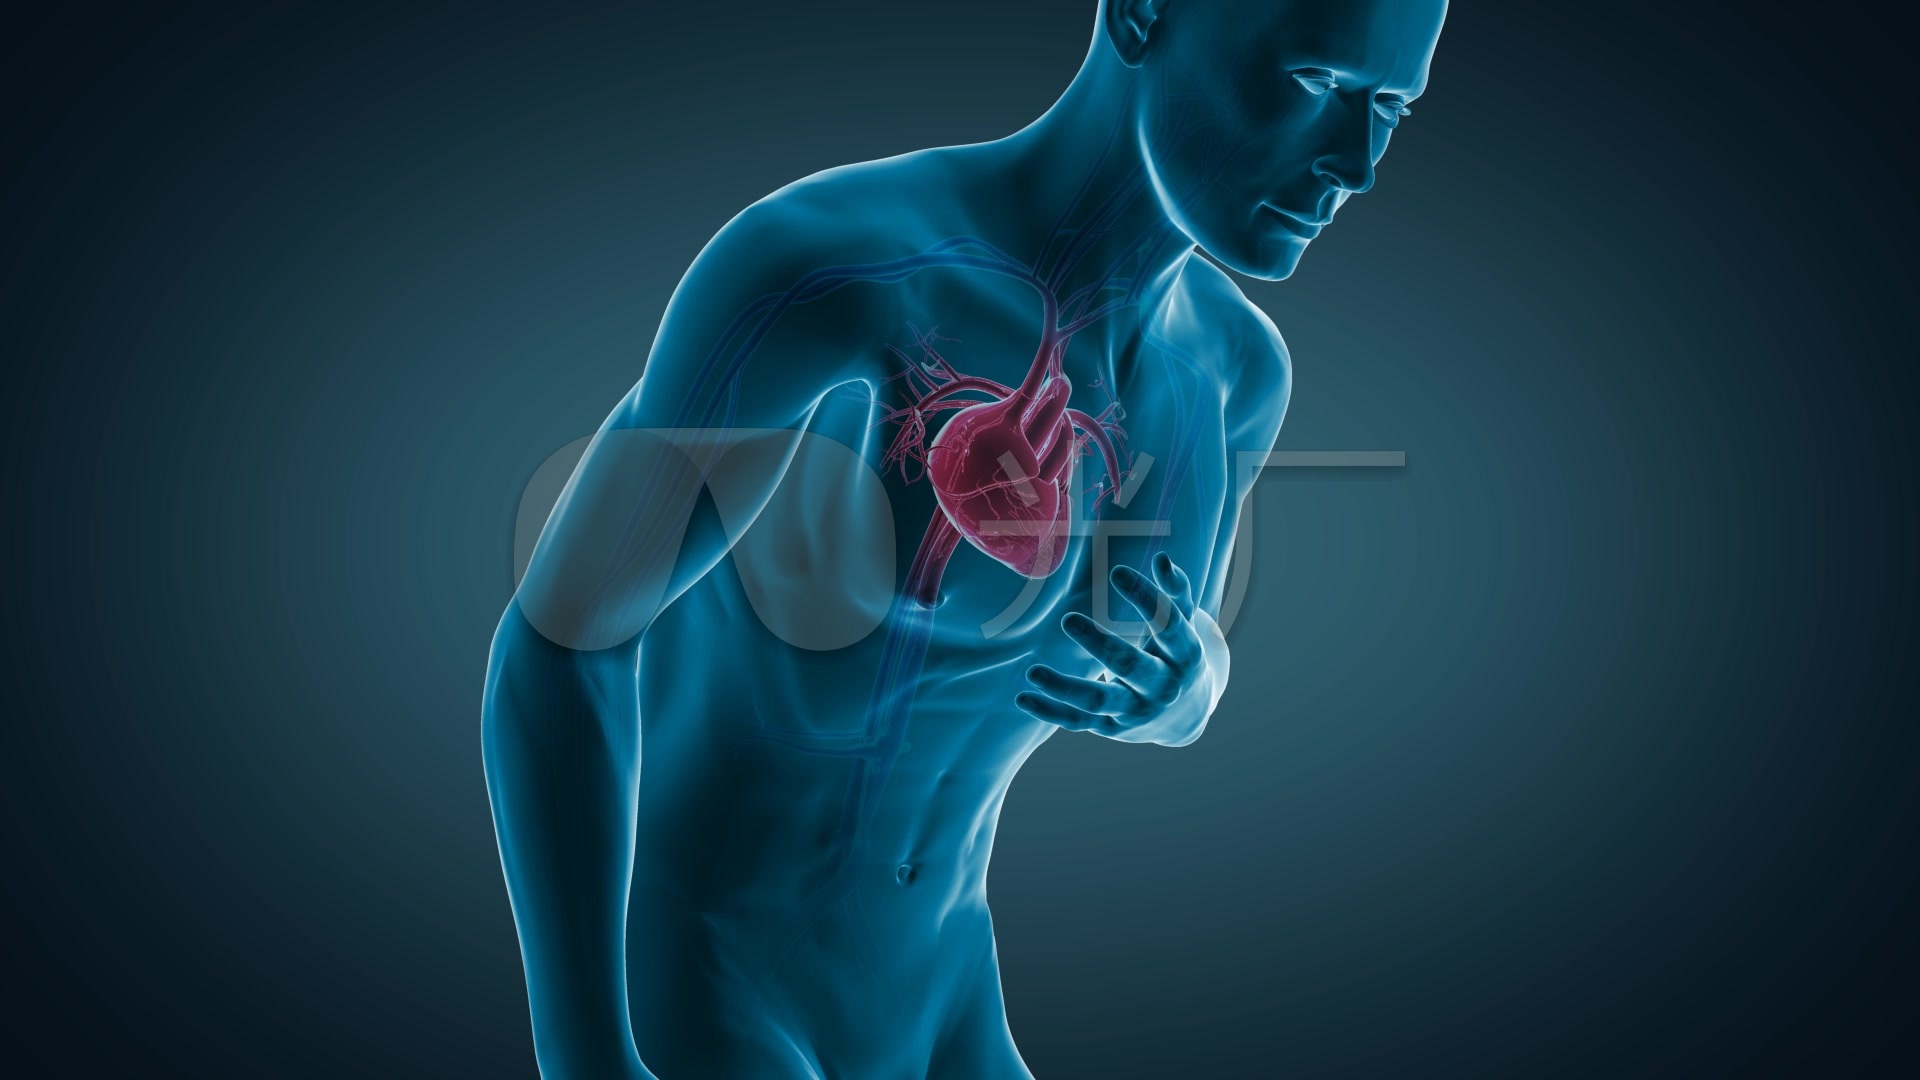 女性身體不舒服捂住胸口心臟疼圖片素材-JPG圖片尺寸6720 × 4480px-高清圖案501683949-zh.lovepik.com